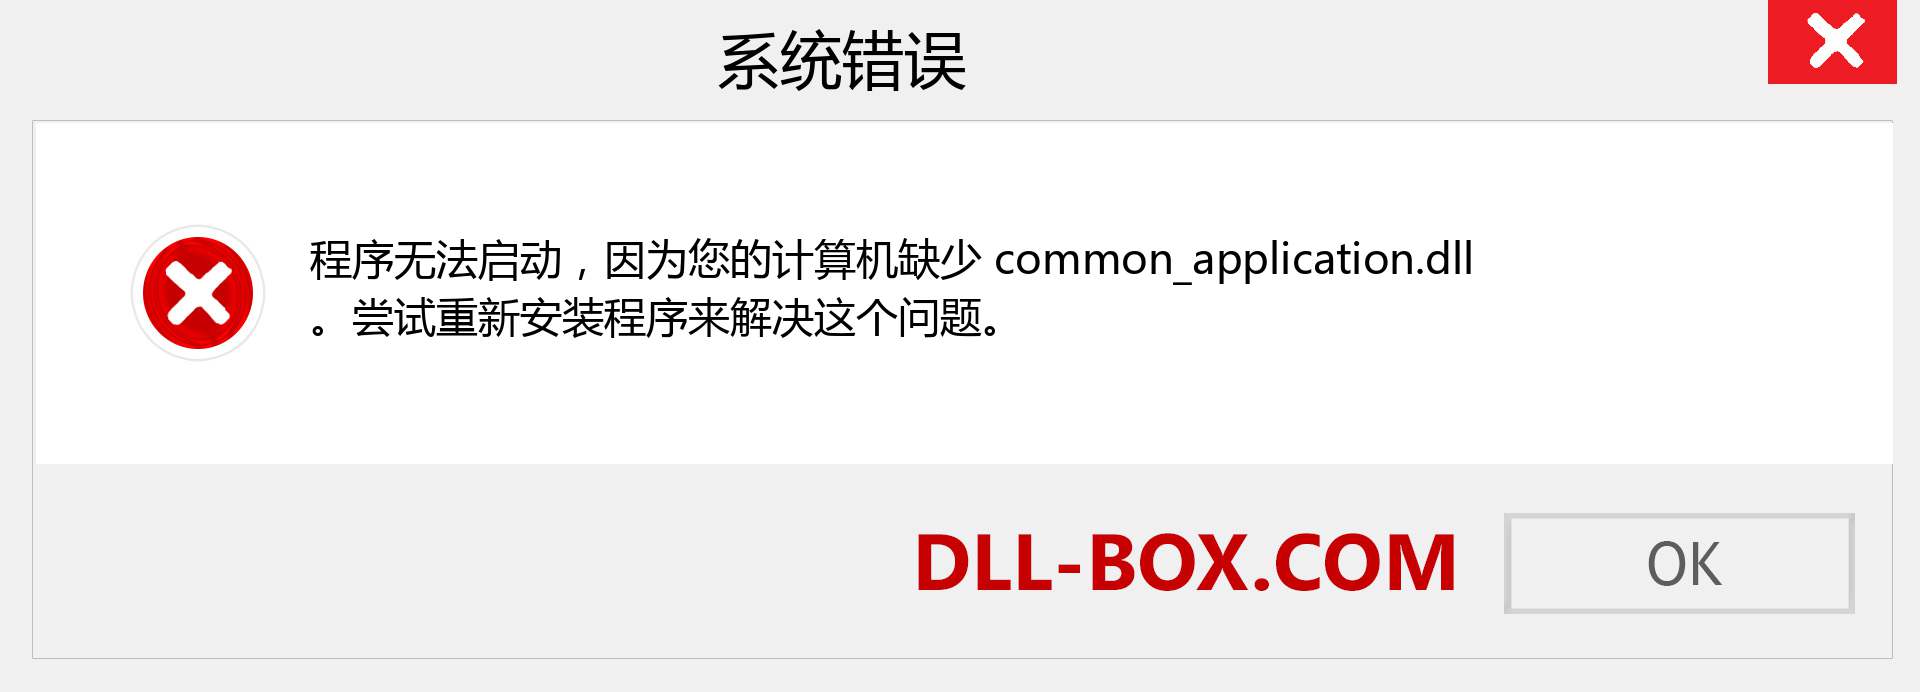 common_application.dll 文件丢失？。 适用于 Windows 7、8、10 的下载 - 修复 Windows、照片、图像上的 common_application dll 丢失错误